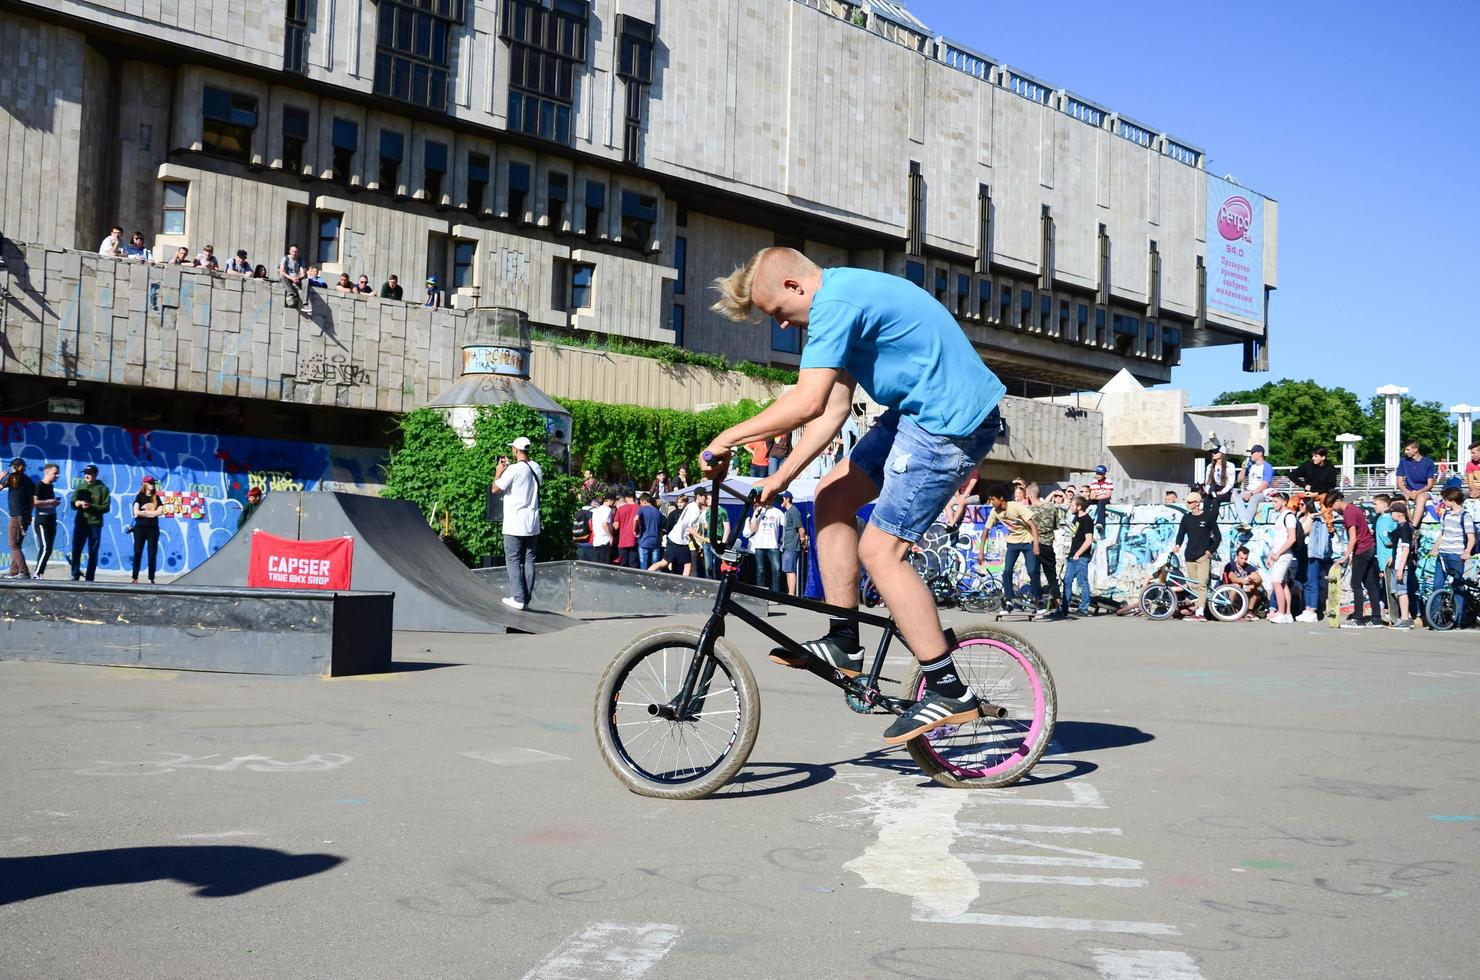 kharkiv, ukraina - 27 Maj, 2018 freestyle bmx ryttare i en skatepark under de årlig festival av gata kulturer foto